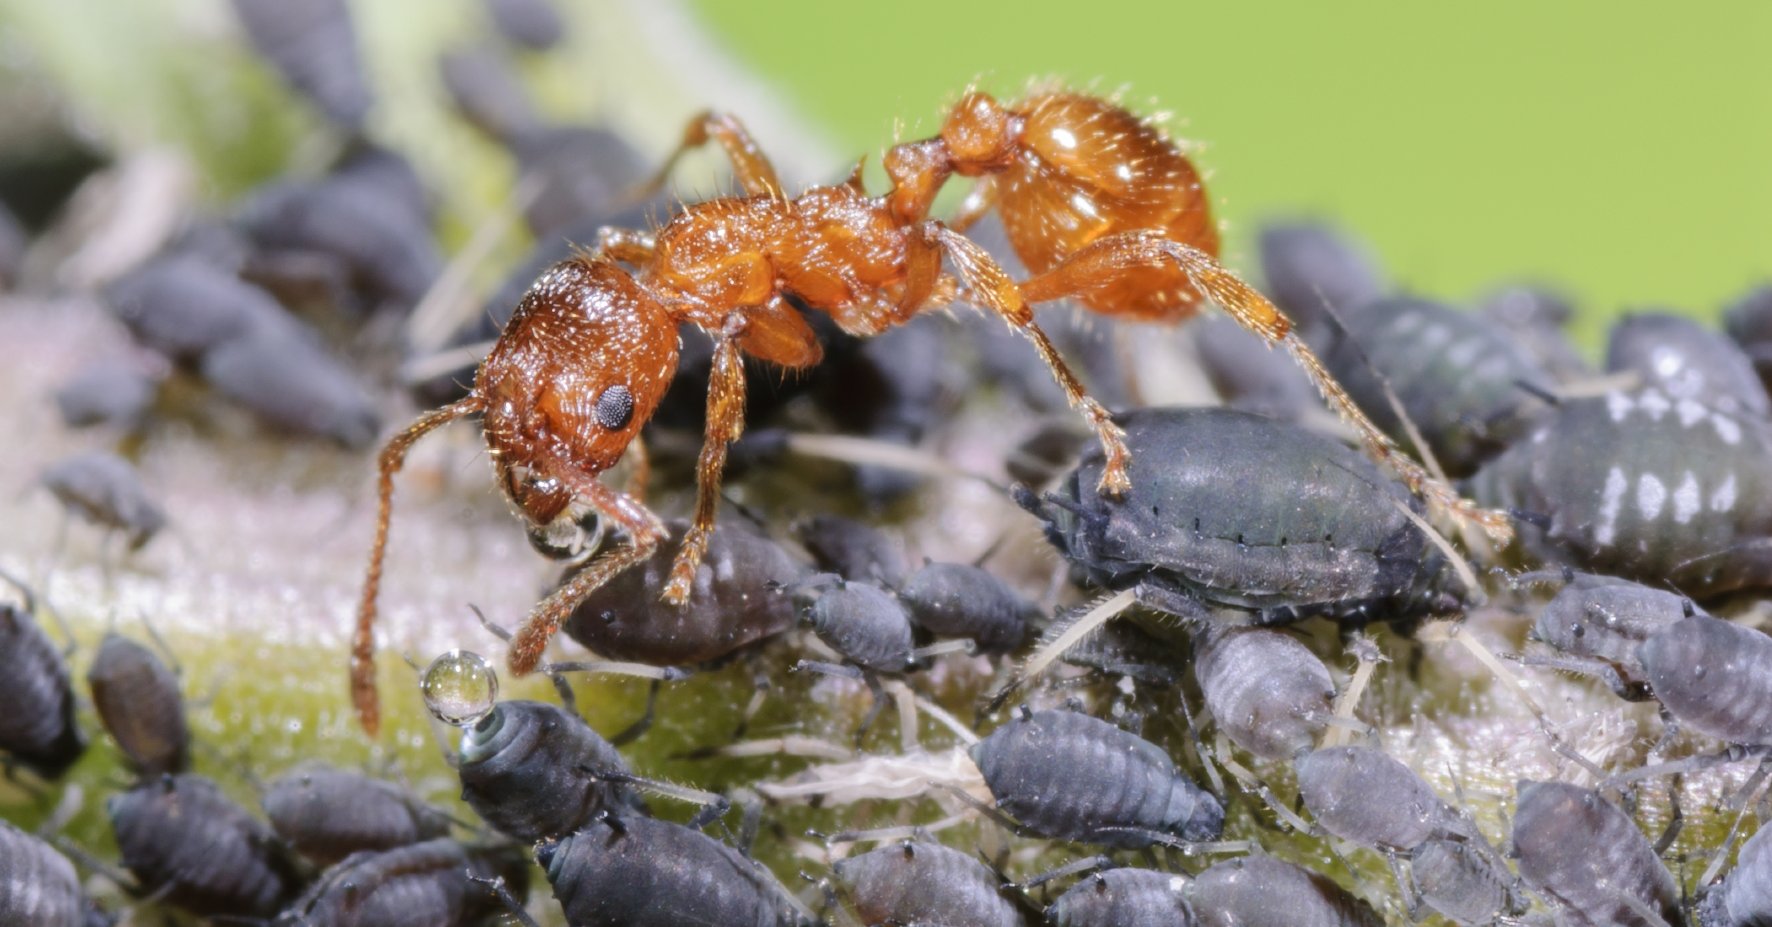 Ameisen sind für den Pflanzenschutz im Garten nicht vorteilhaft